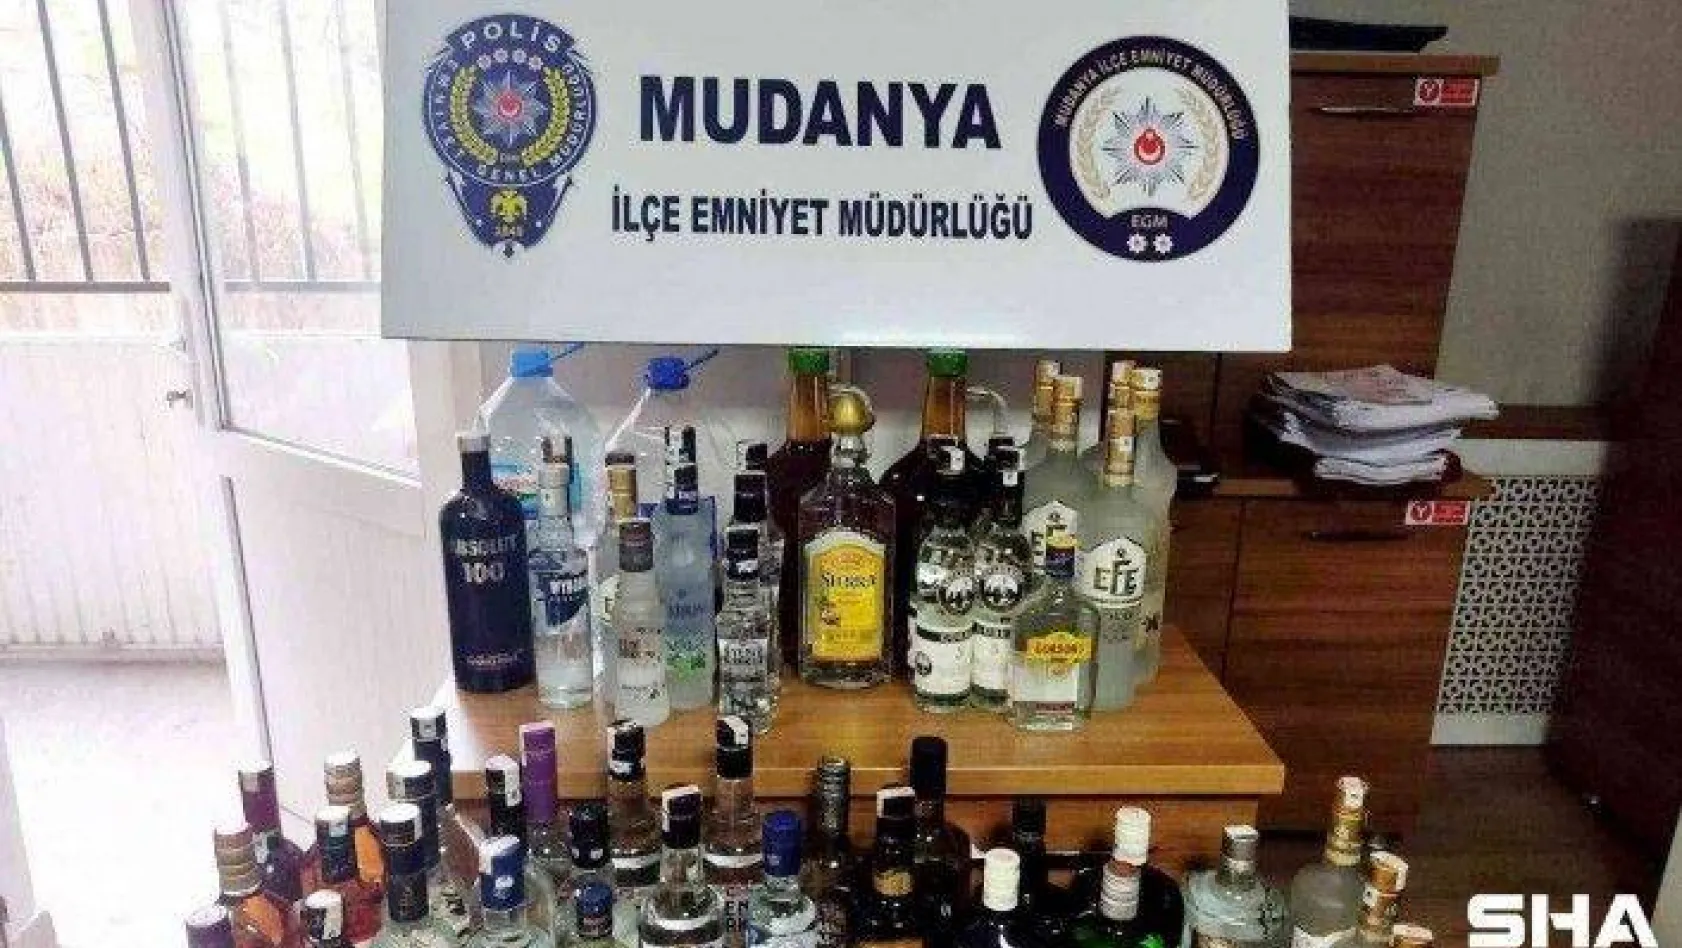 Mudanya'da 55 litre sahte içki ele geçirildi